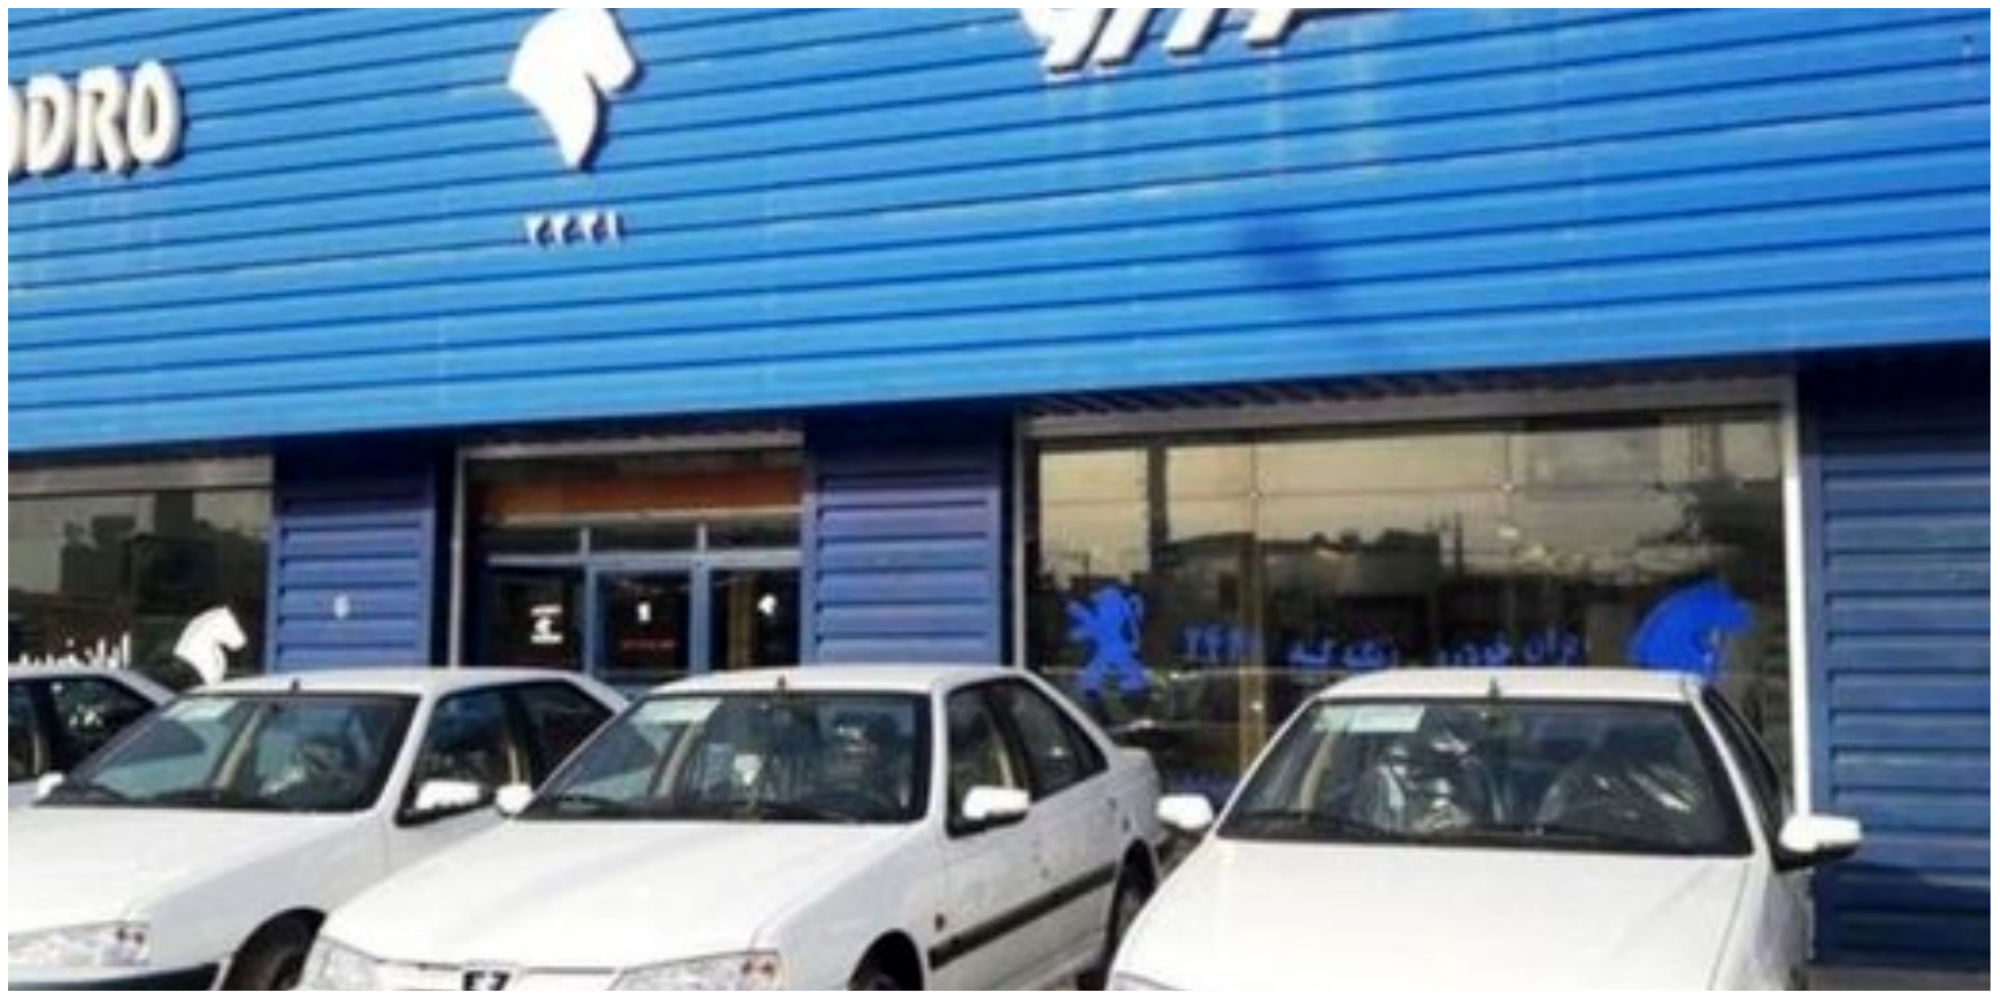 ایران خودرو کی اعلام ورشکستگی می کند؟/ همه ارقام می گوید این شرکت در آستانه ورشکستگی است